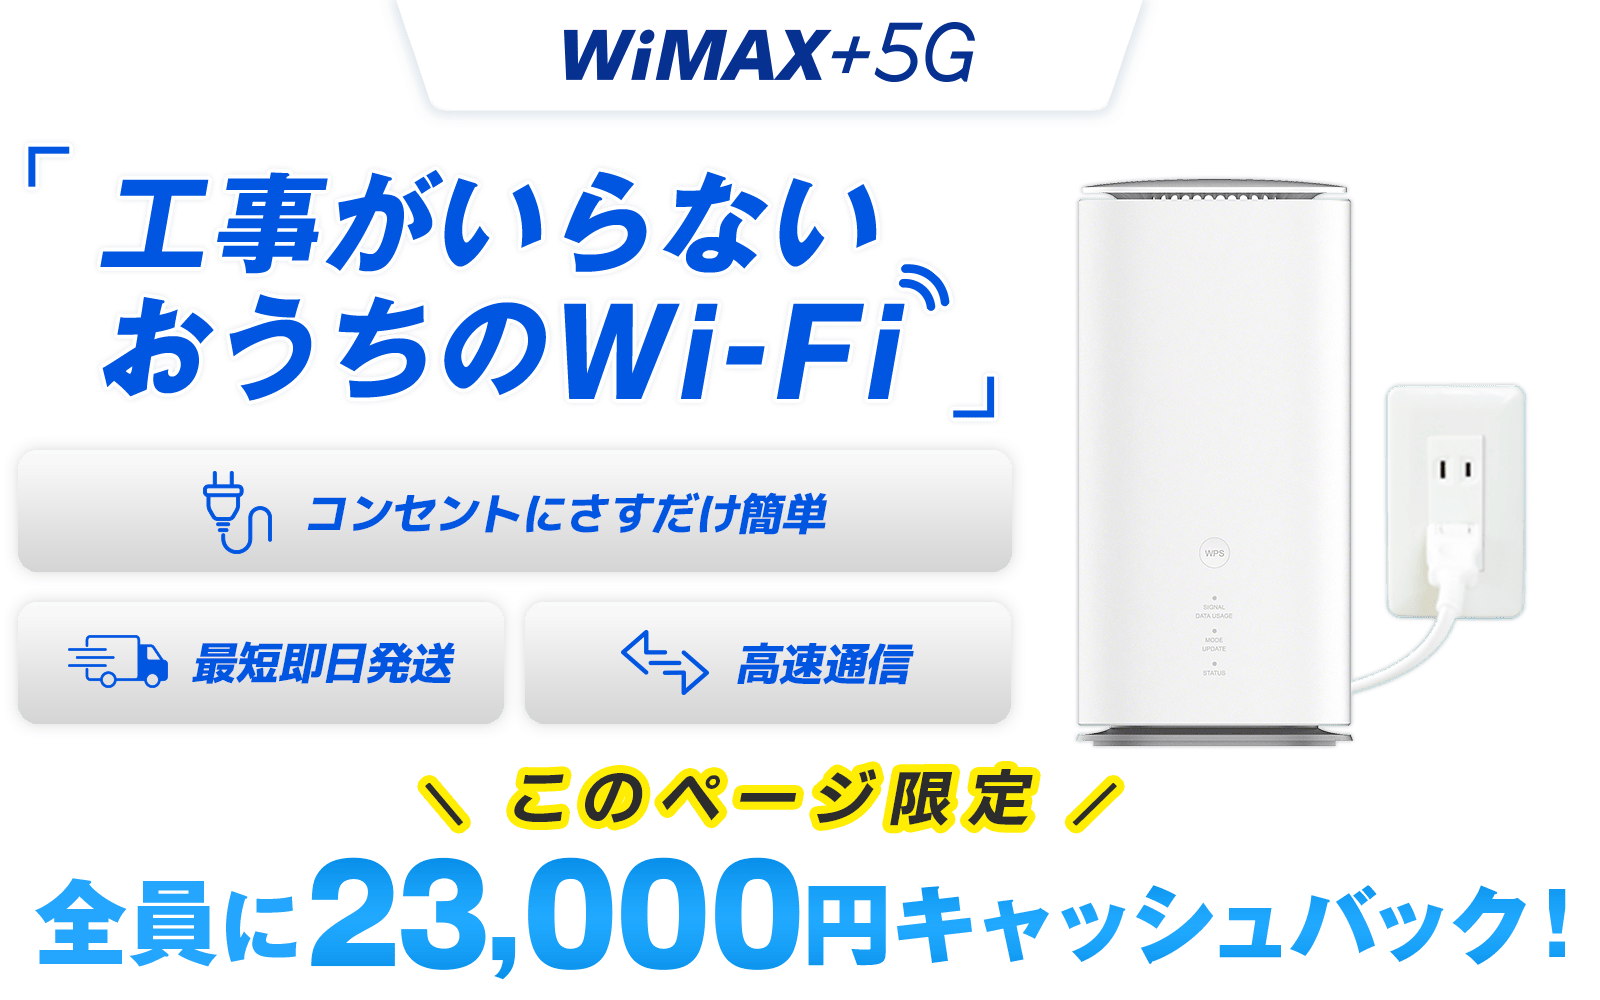 WiMAX +5G 工事がいらないおうちのWi-Fi コンセントにさすだけ簡単 最短即日発送 高速通信